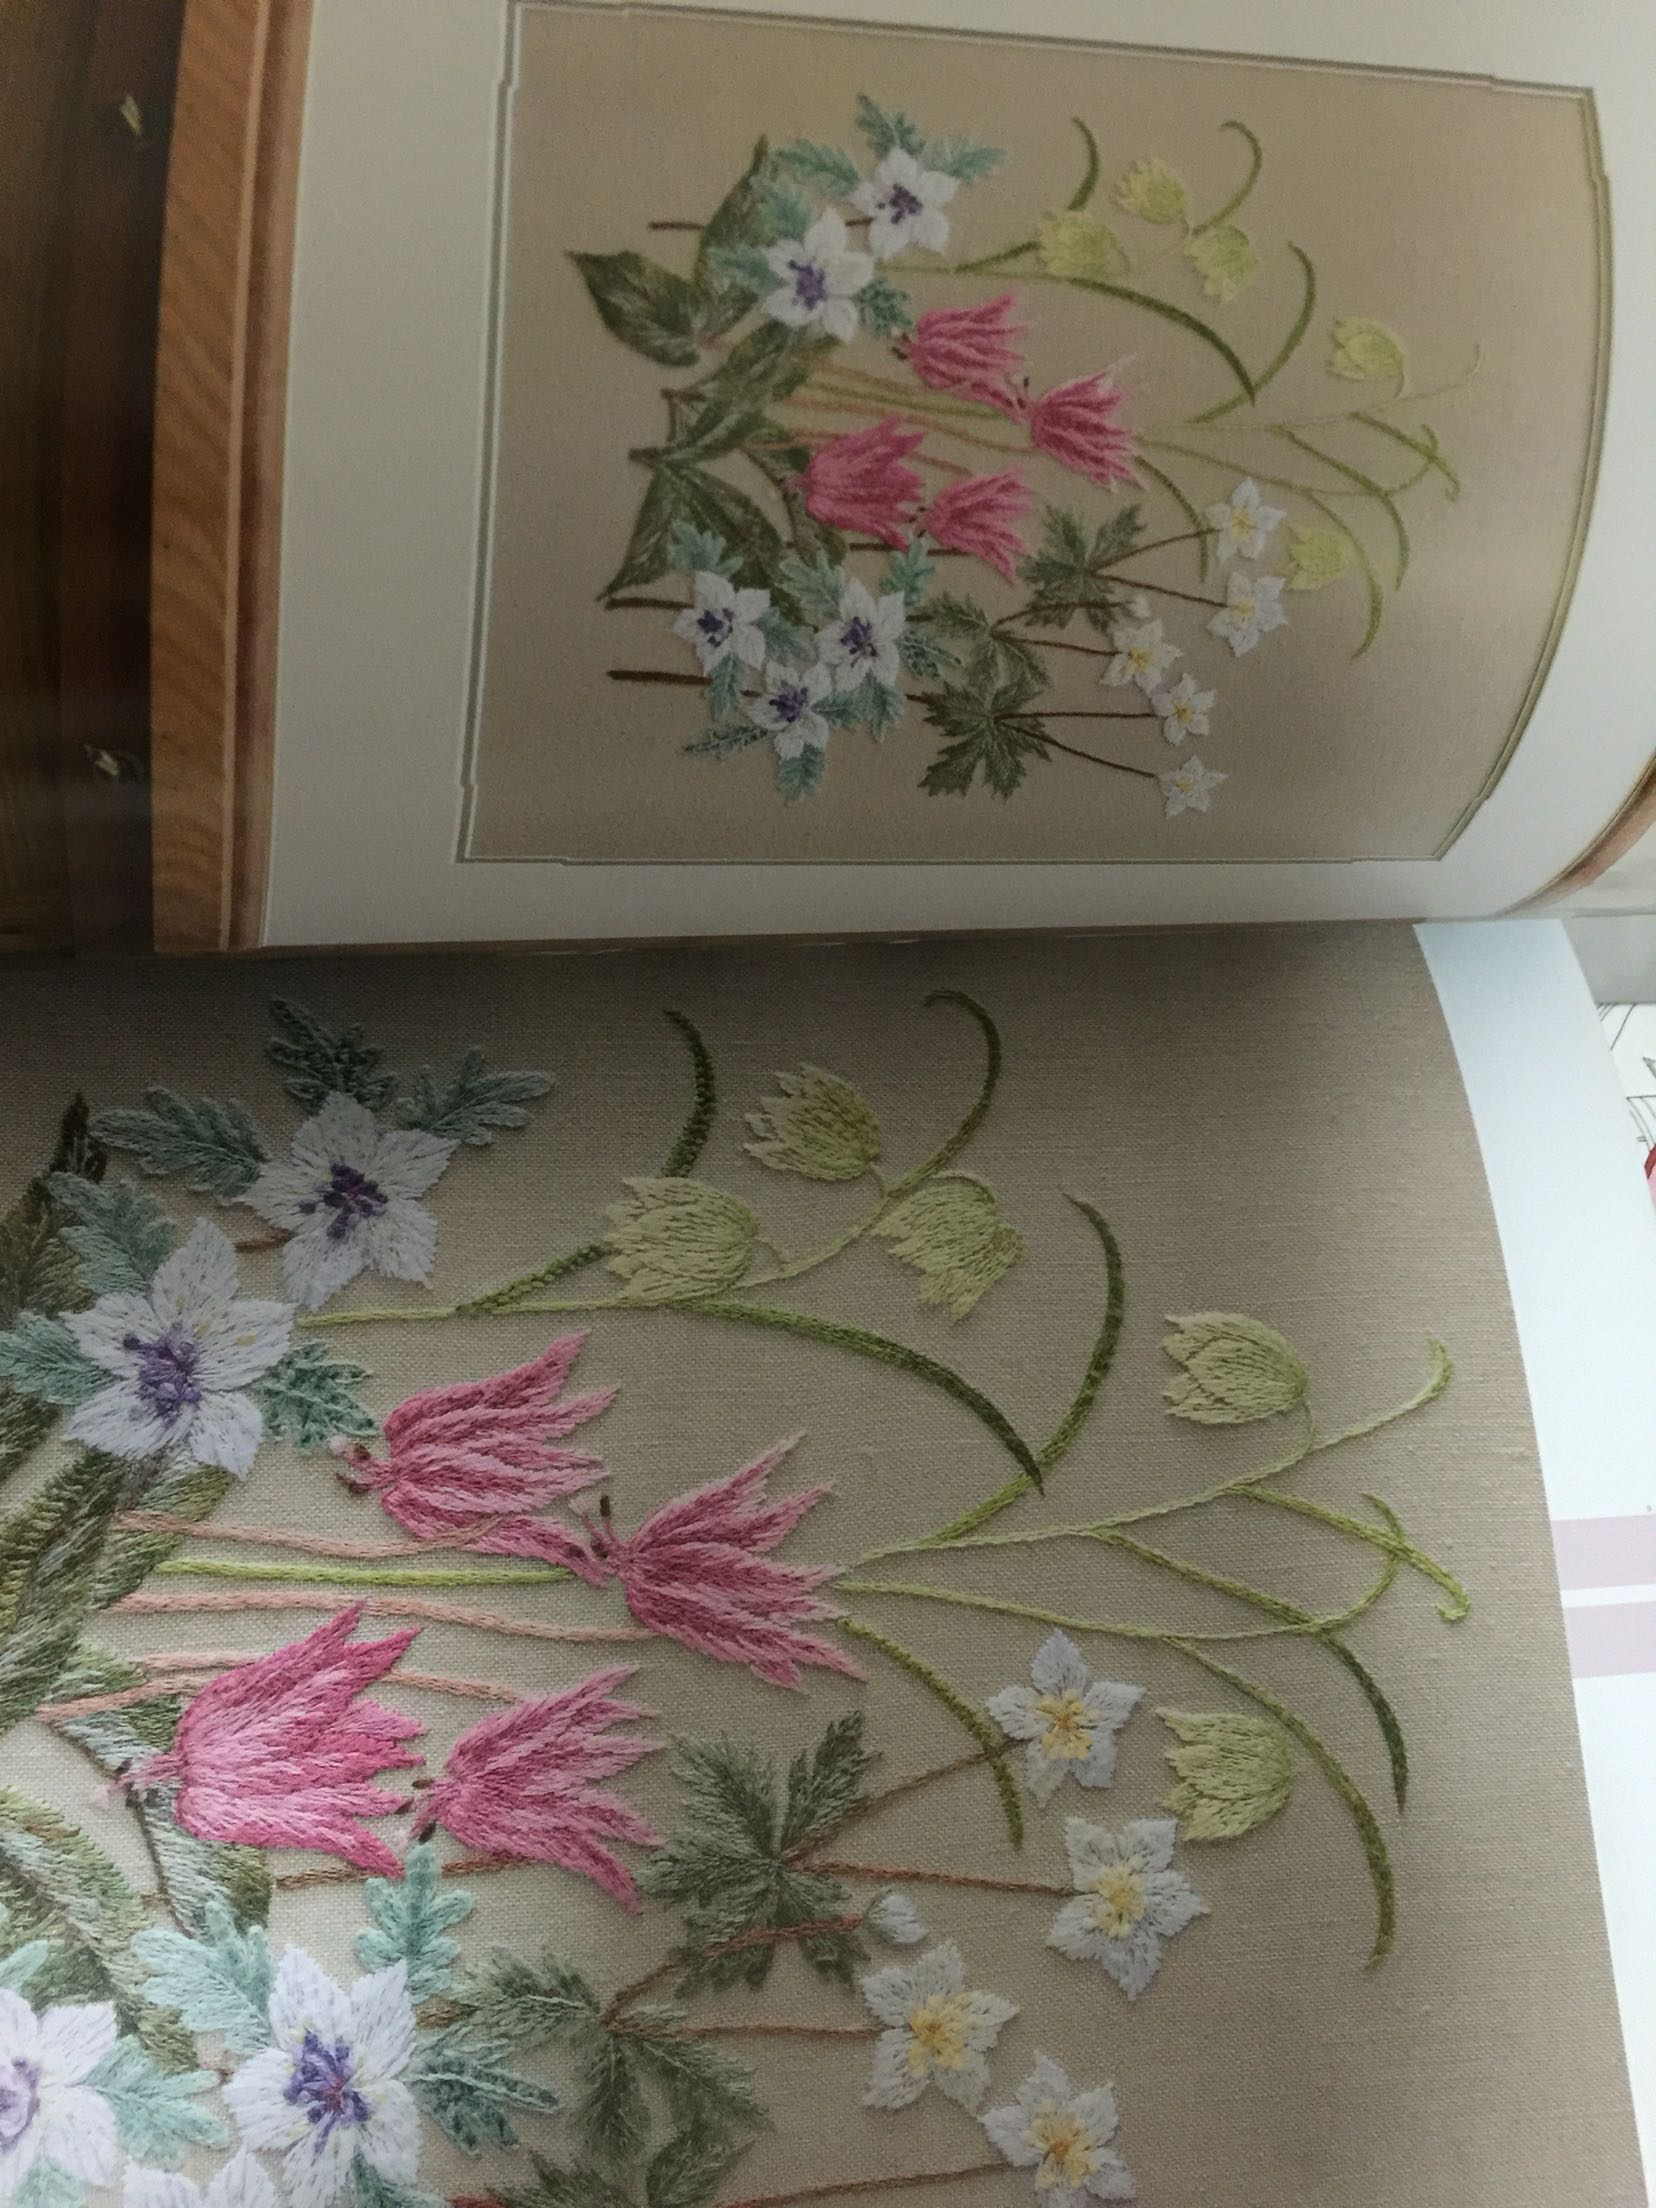 书中的绣花图颜色搭配得很漂亮，讲解也很细致。